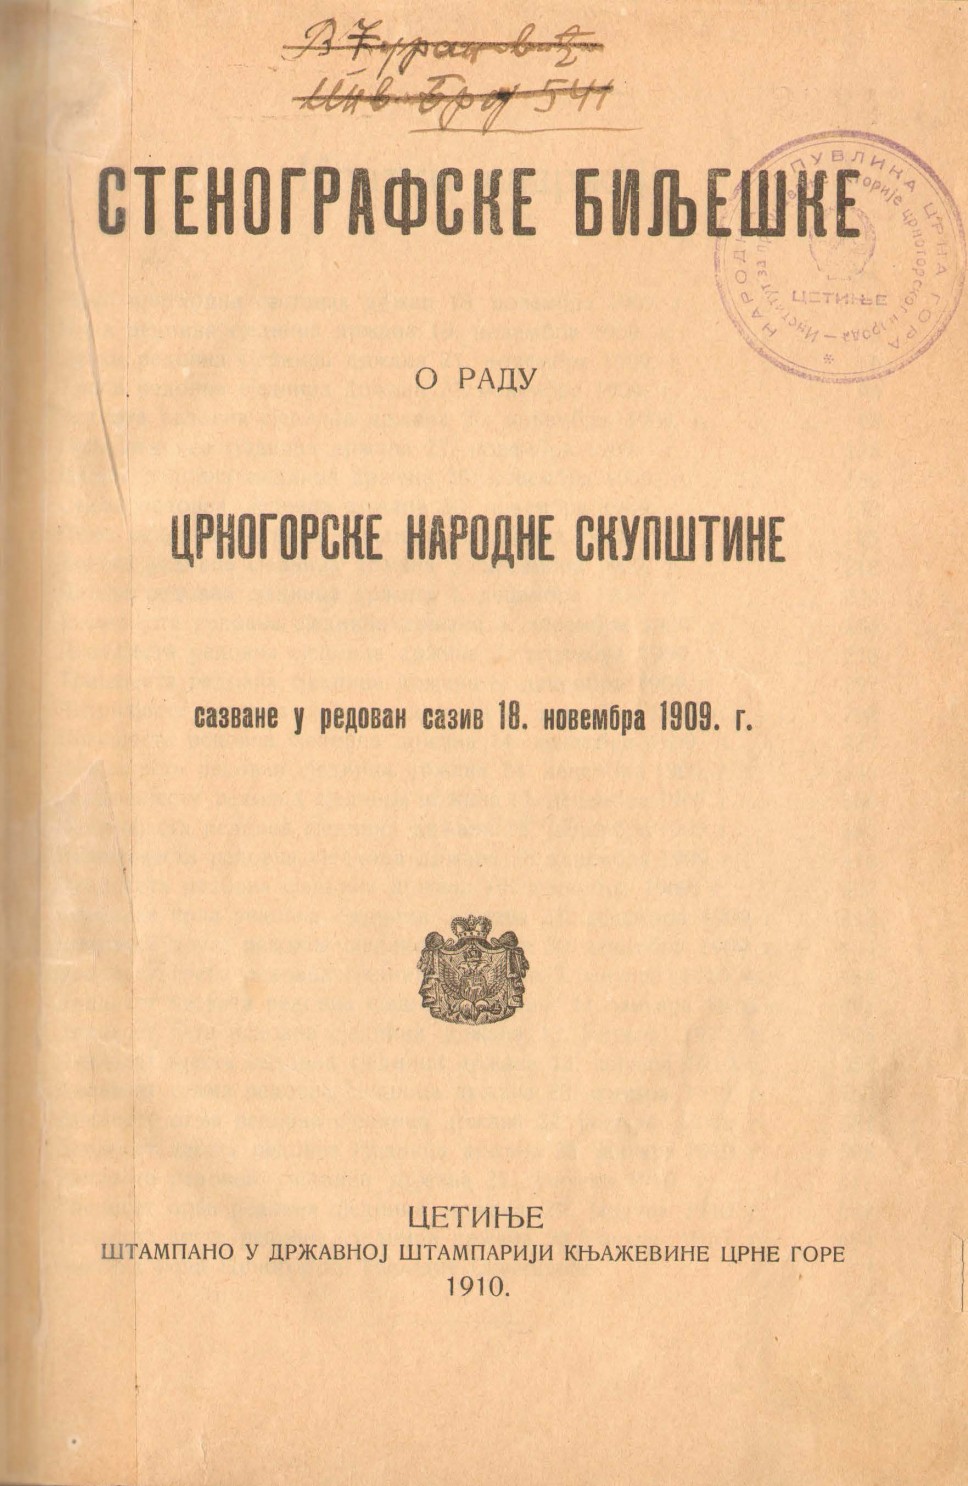 Stenografske bilješke crnogorske narodne skupštine, 1909